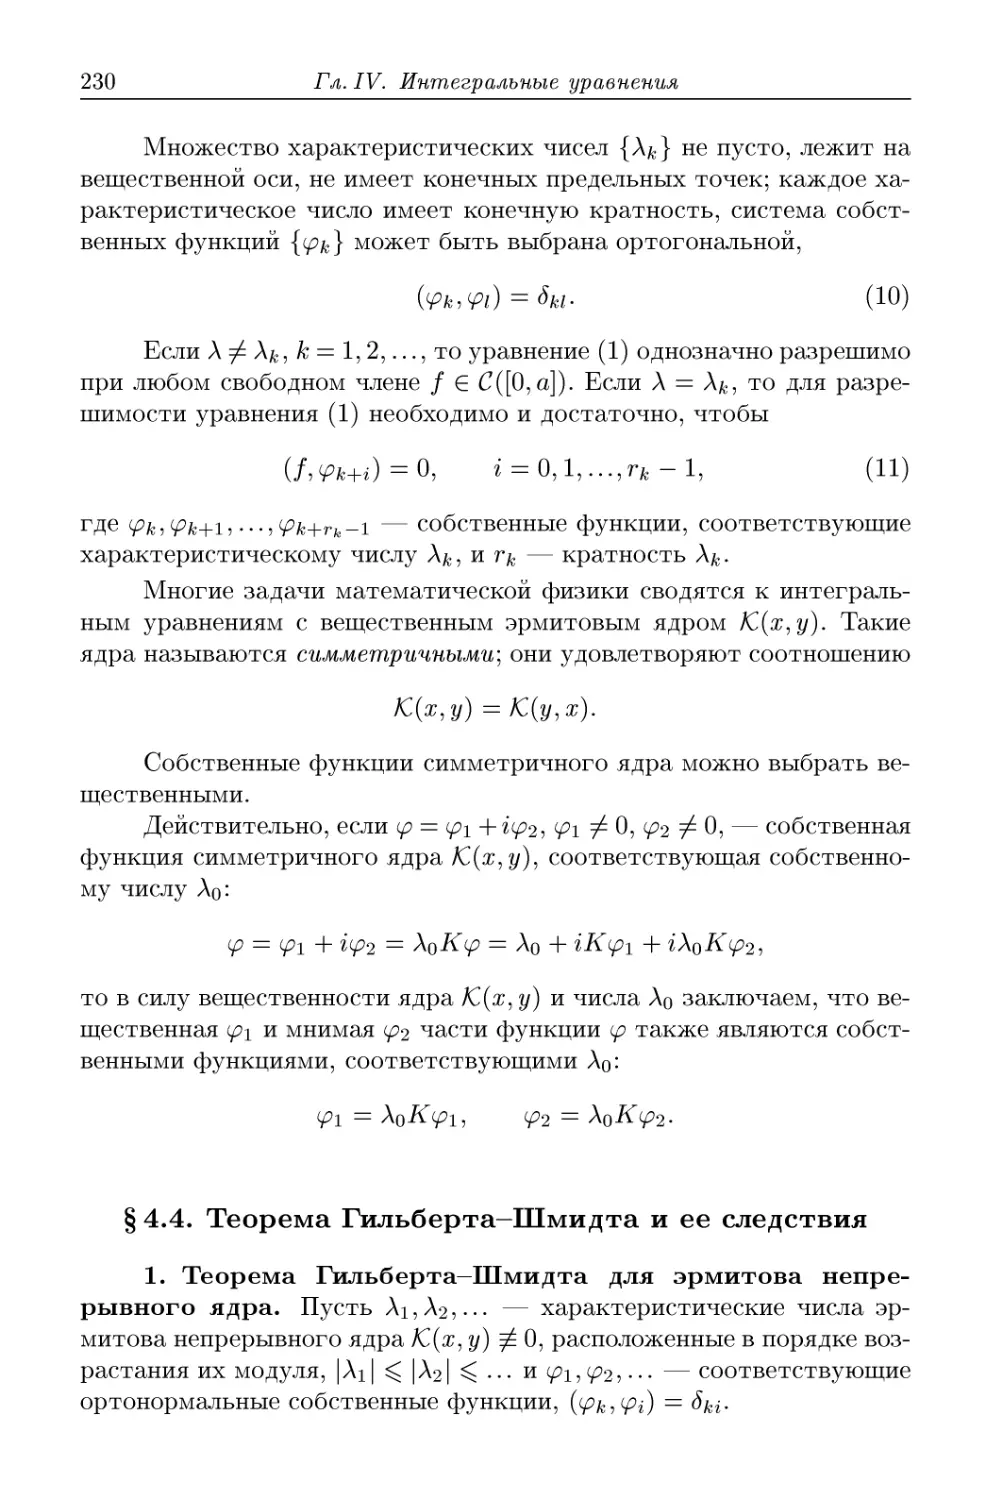 § 4.4. Теорема Гильберта-Шмидта и ее следствия